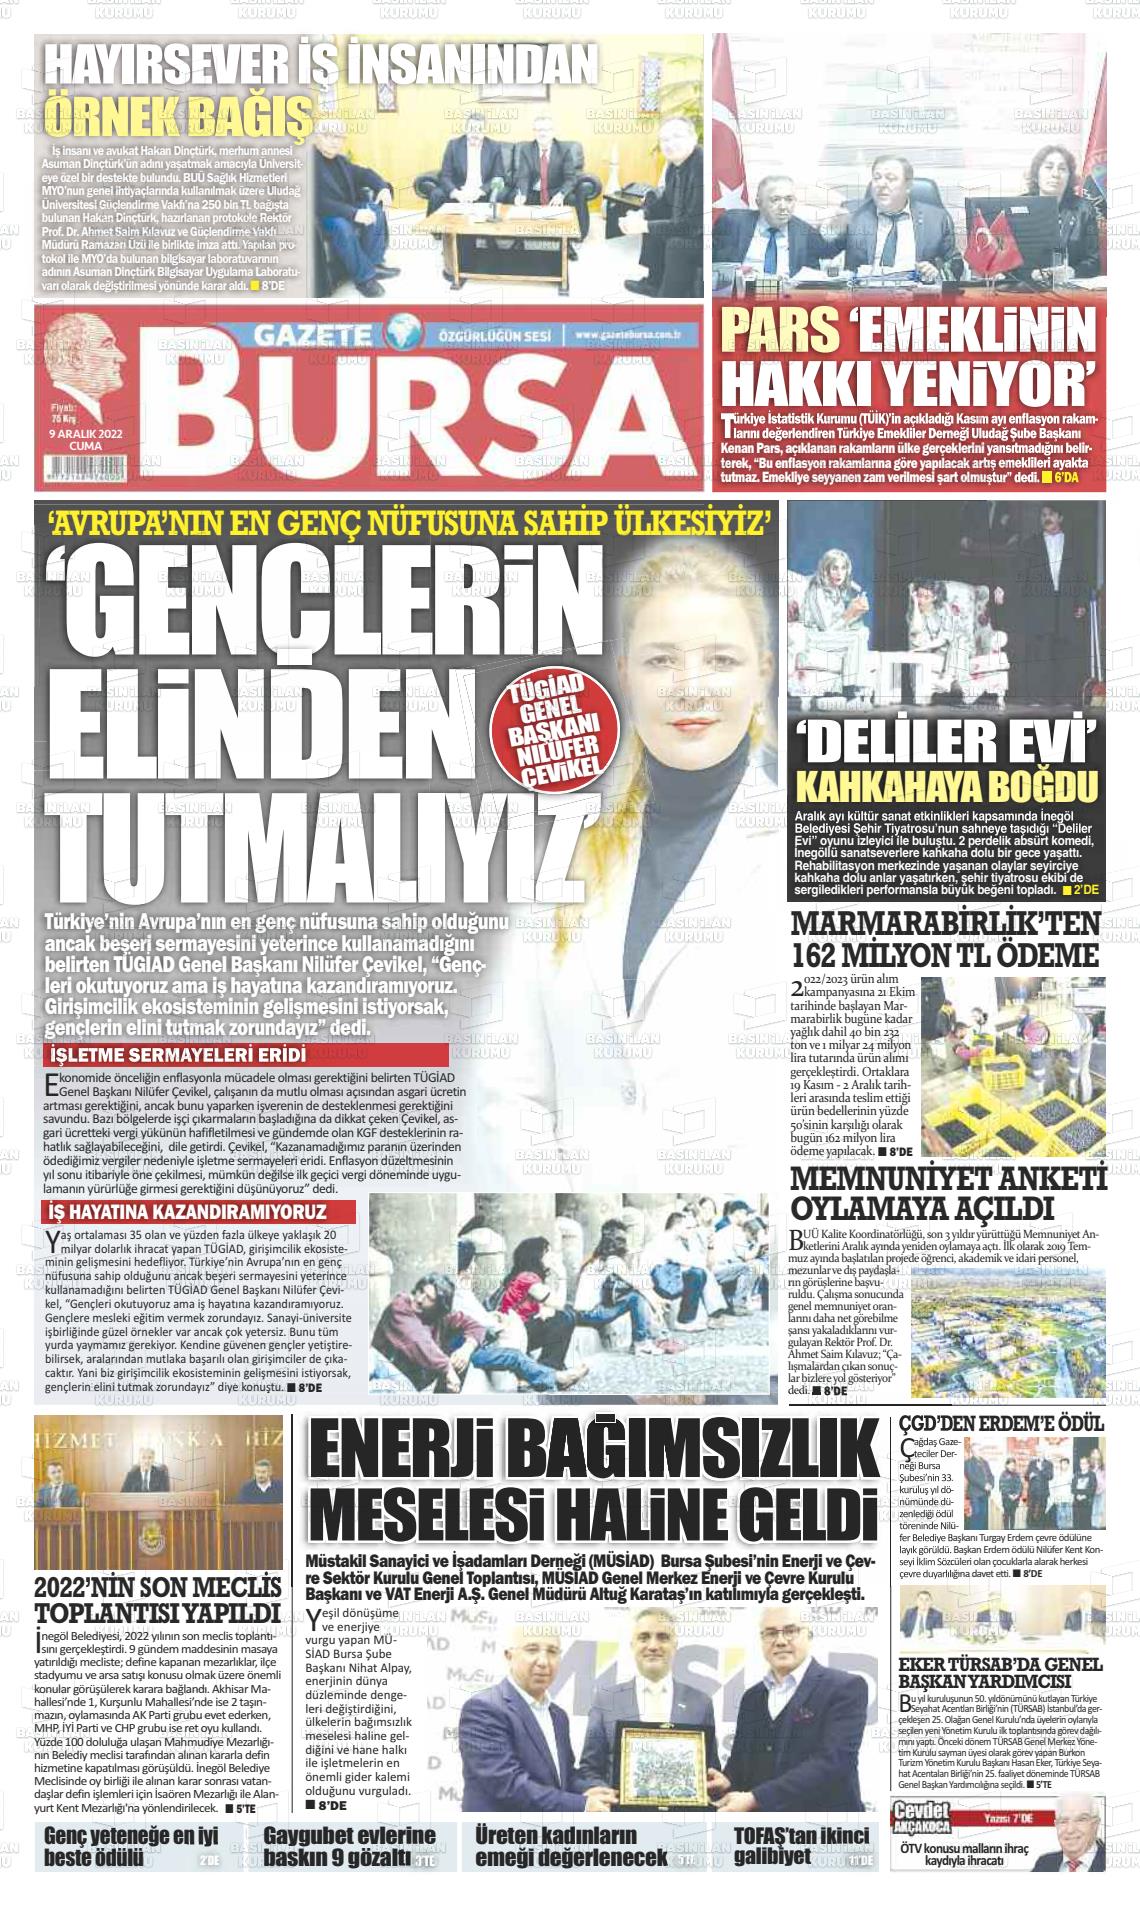 09 Aralık 2022 Gazete Bursa Gazete Manşeti